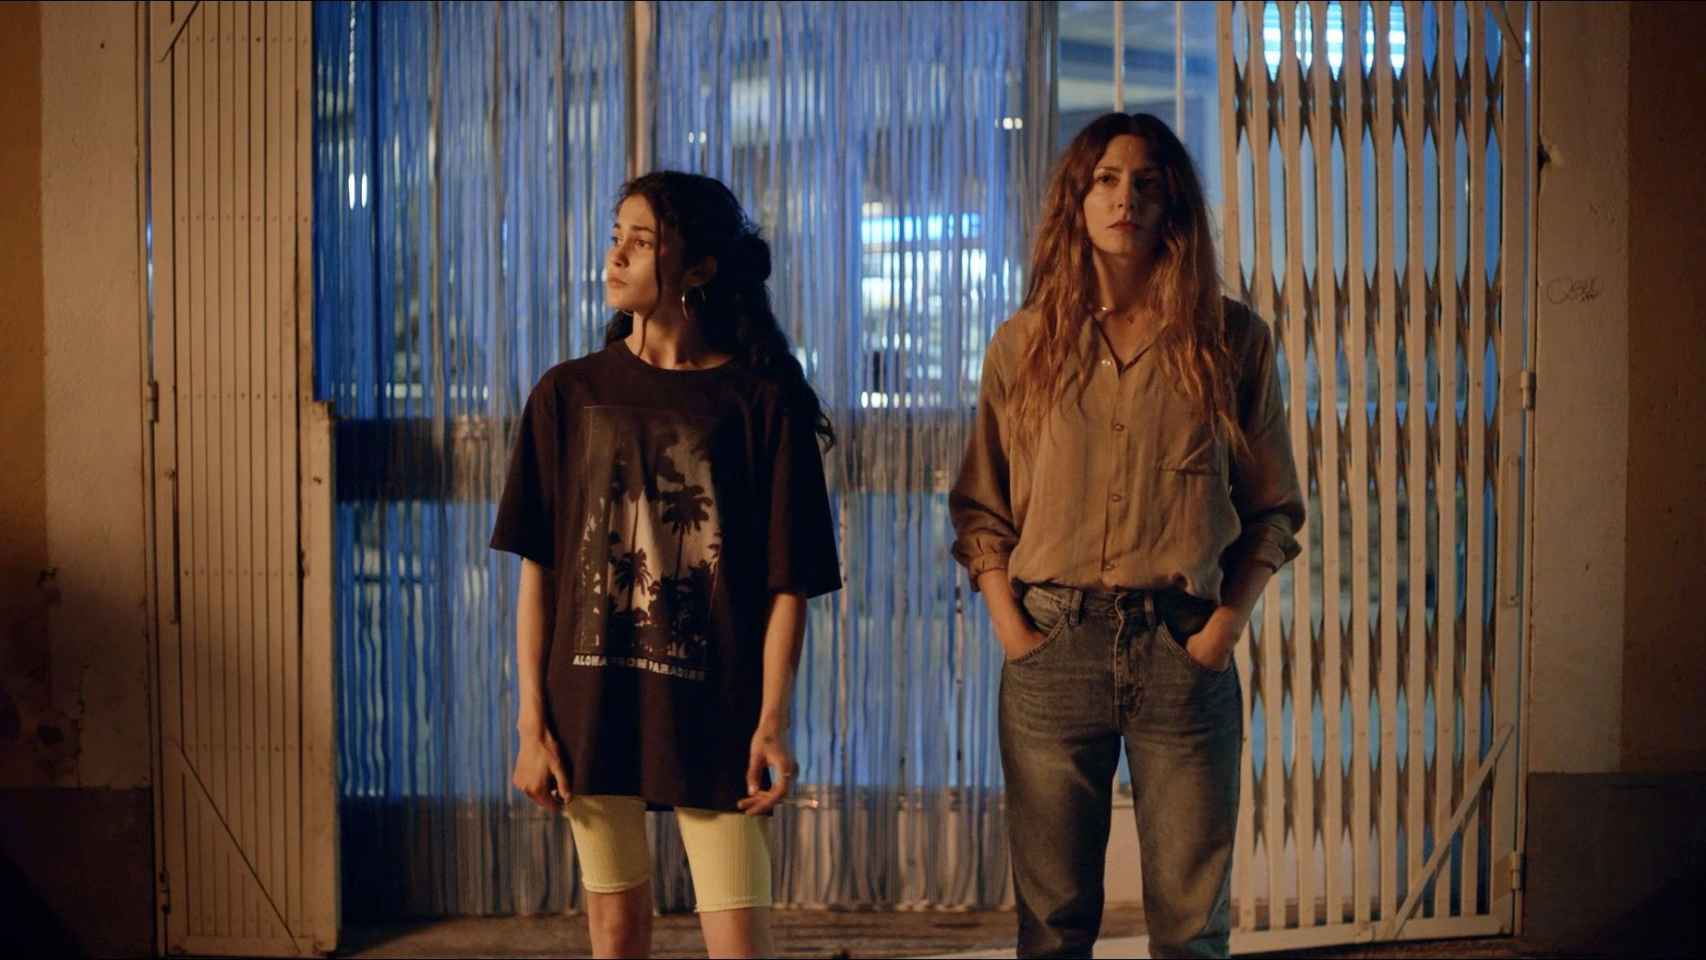 Luna Pamies y Bárbara Lennie en 'El agua', dirigida por Elena López Riera